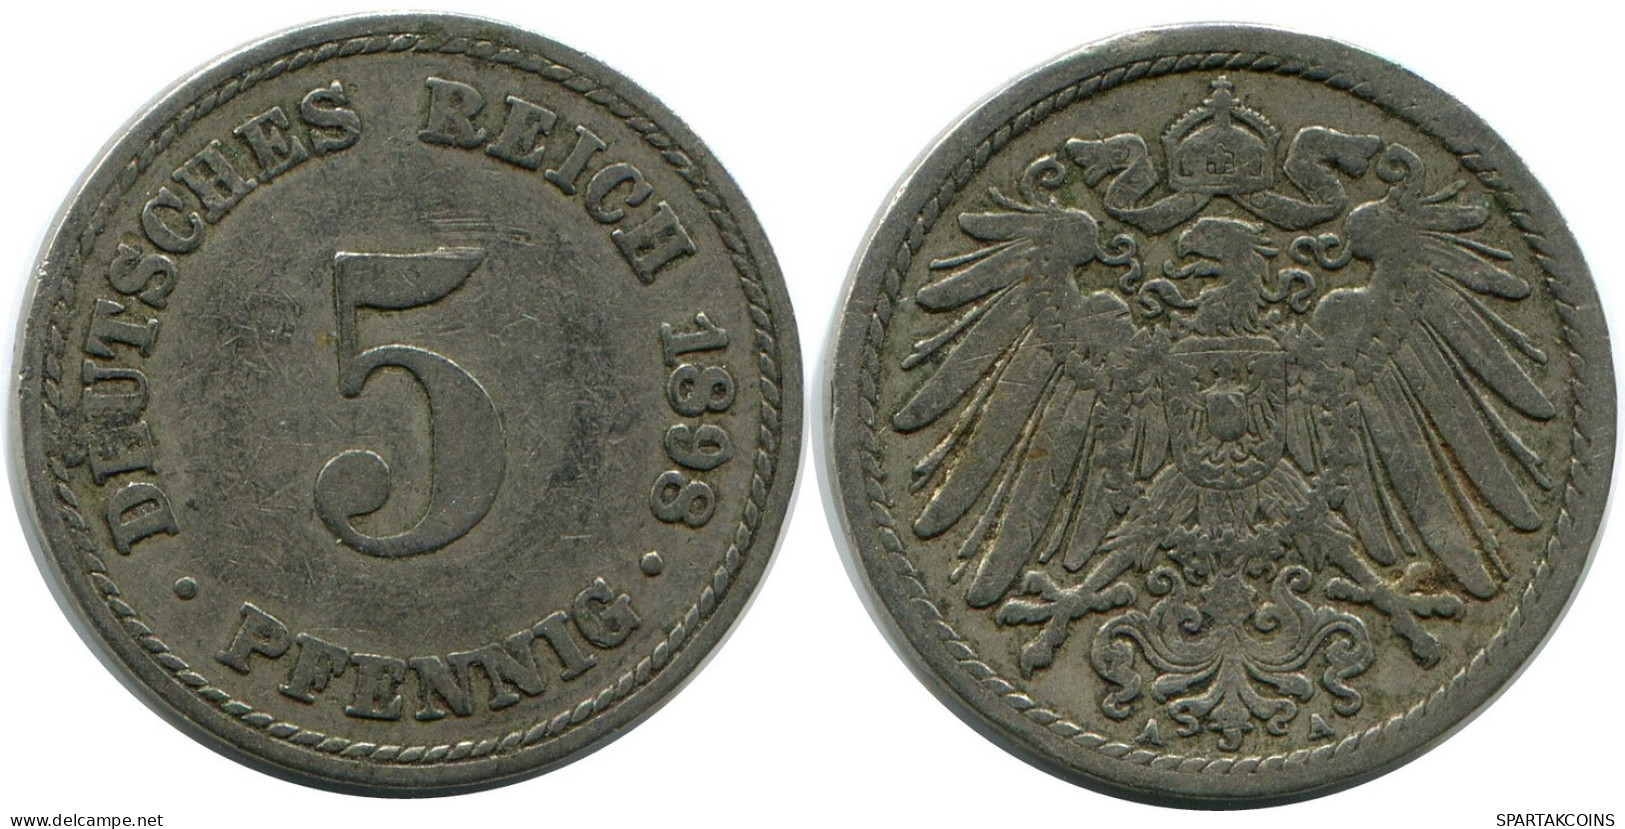 5 PFENNIG 1898 A GERMANY Coin #DB175.U.A - 5 Pfennig